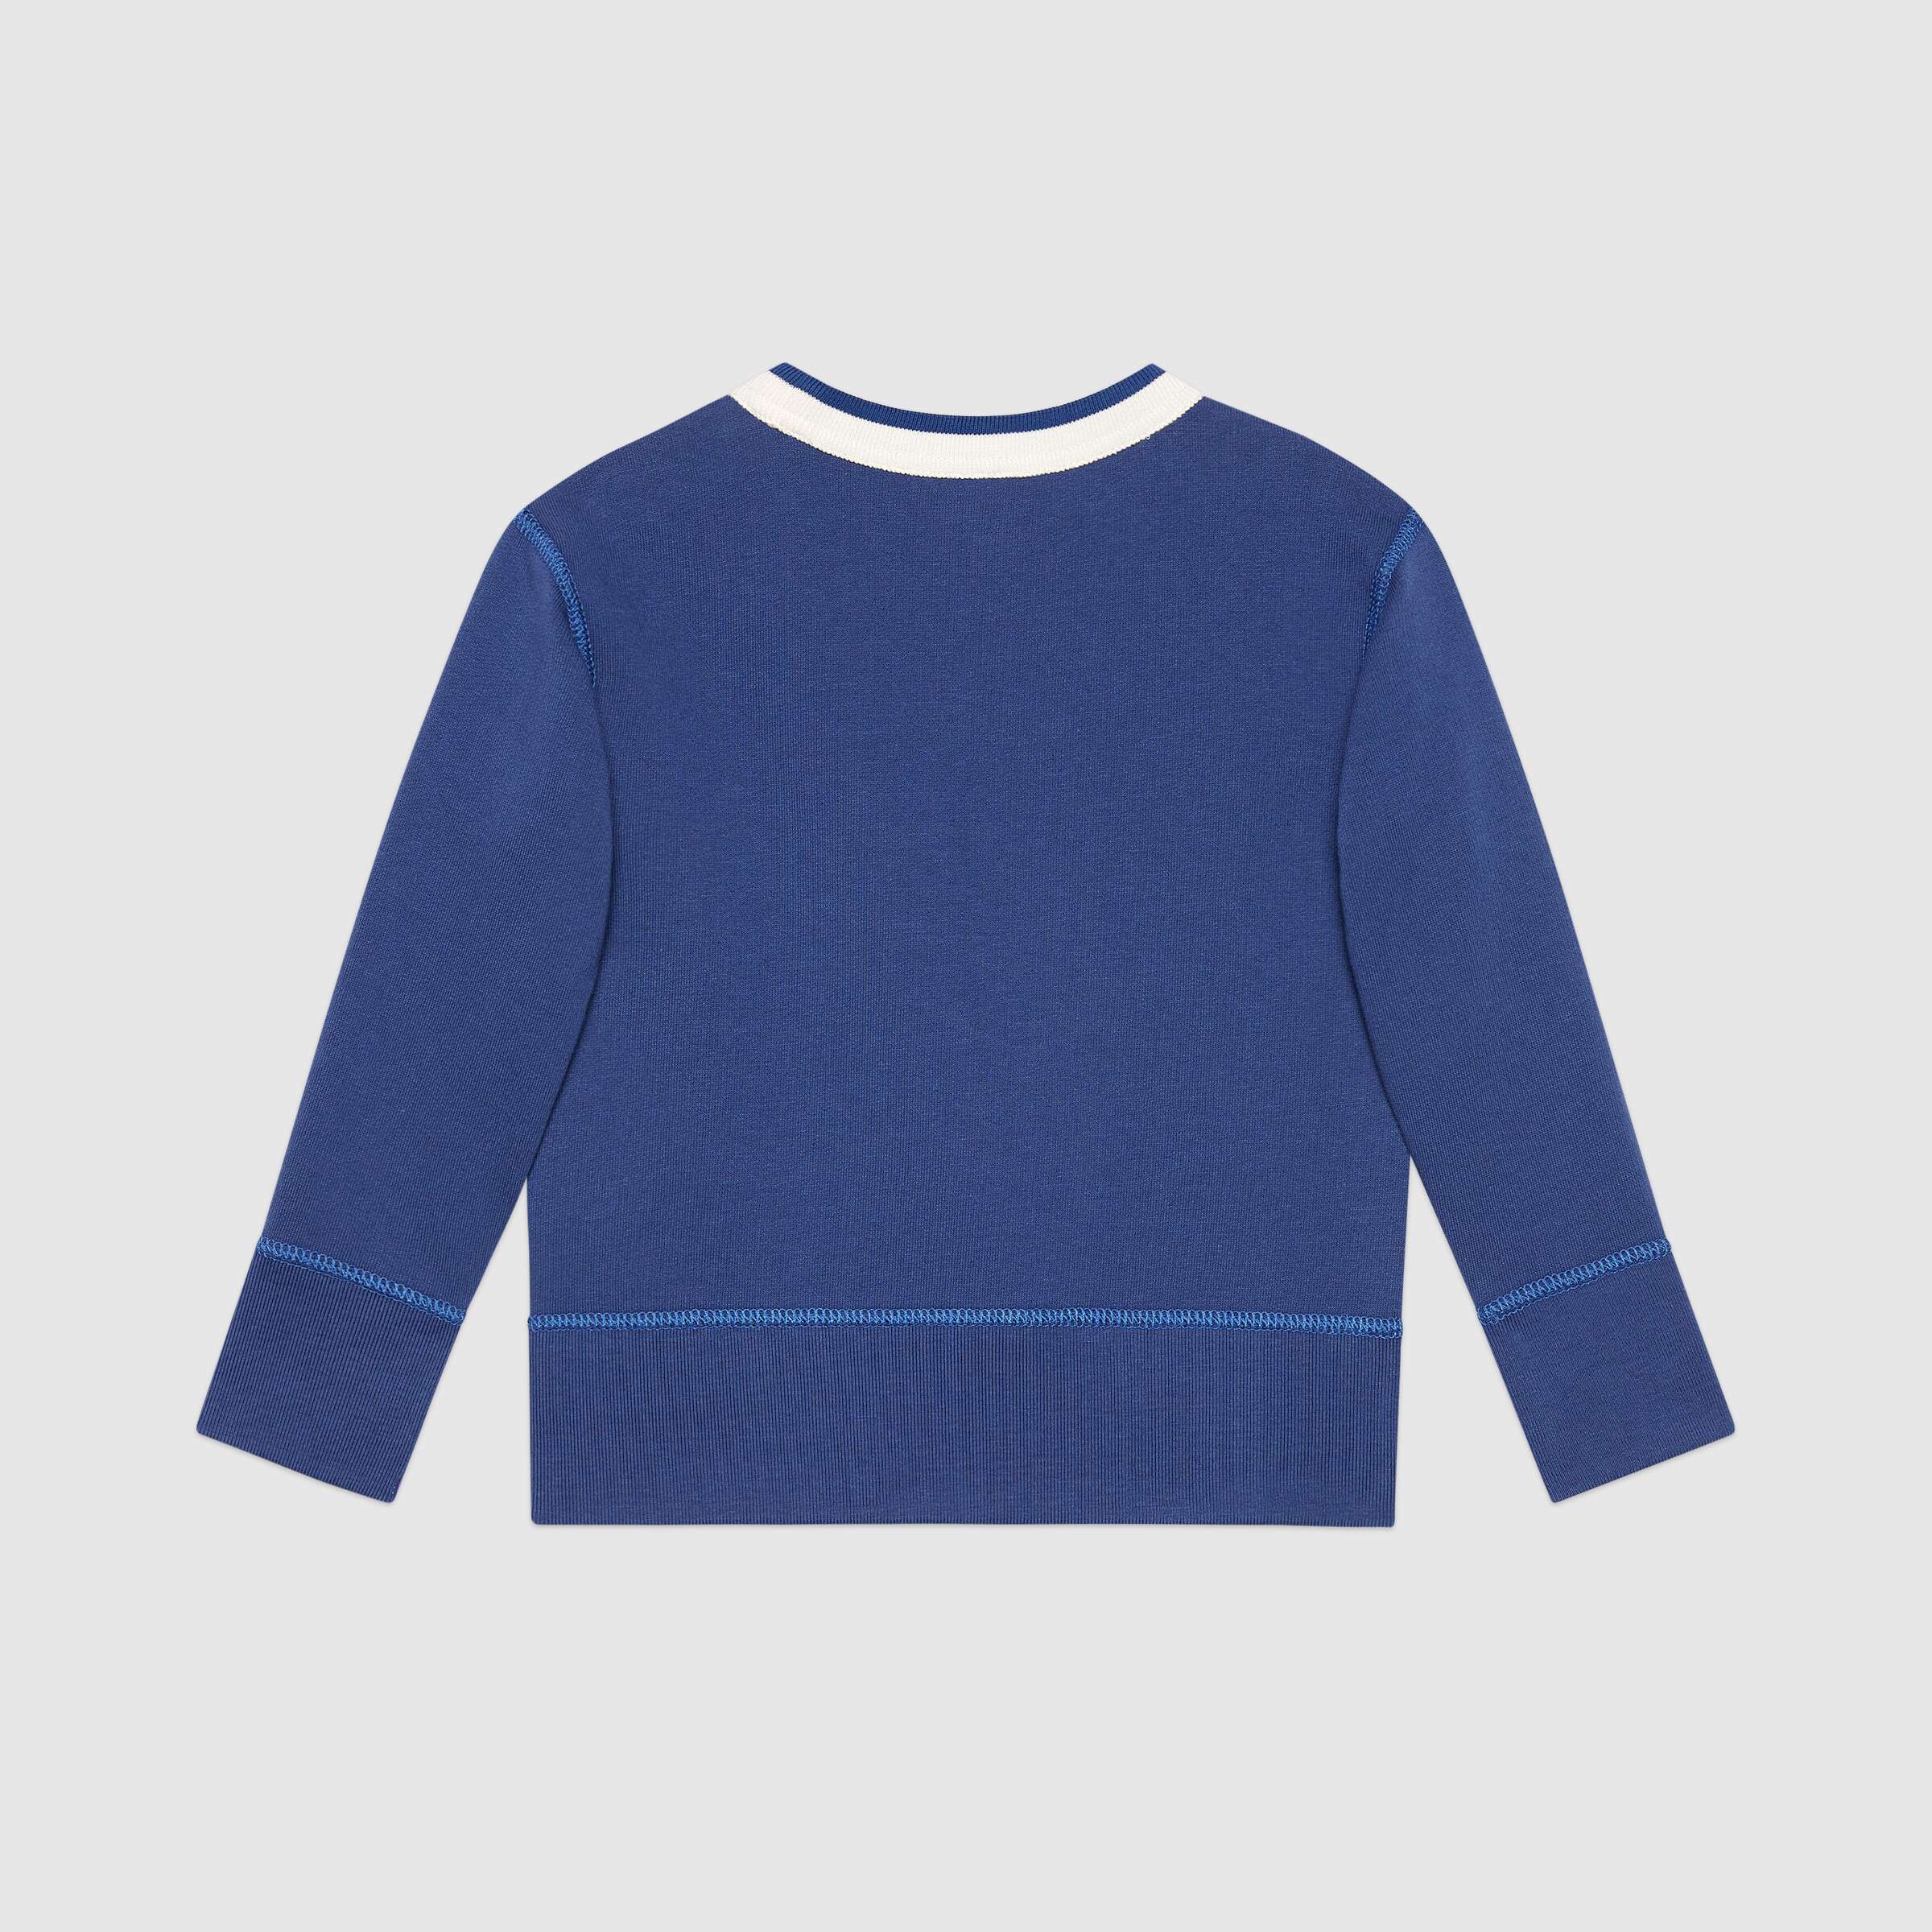 Girls Blue Indigo Cotton Sweatshirt